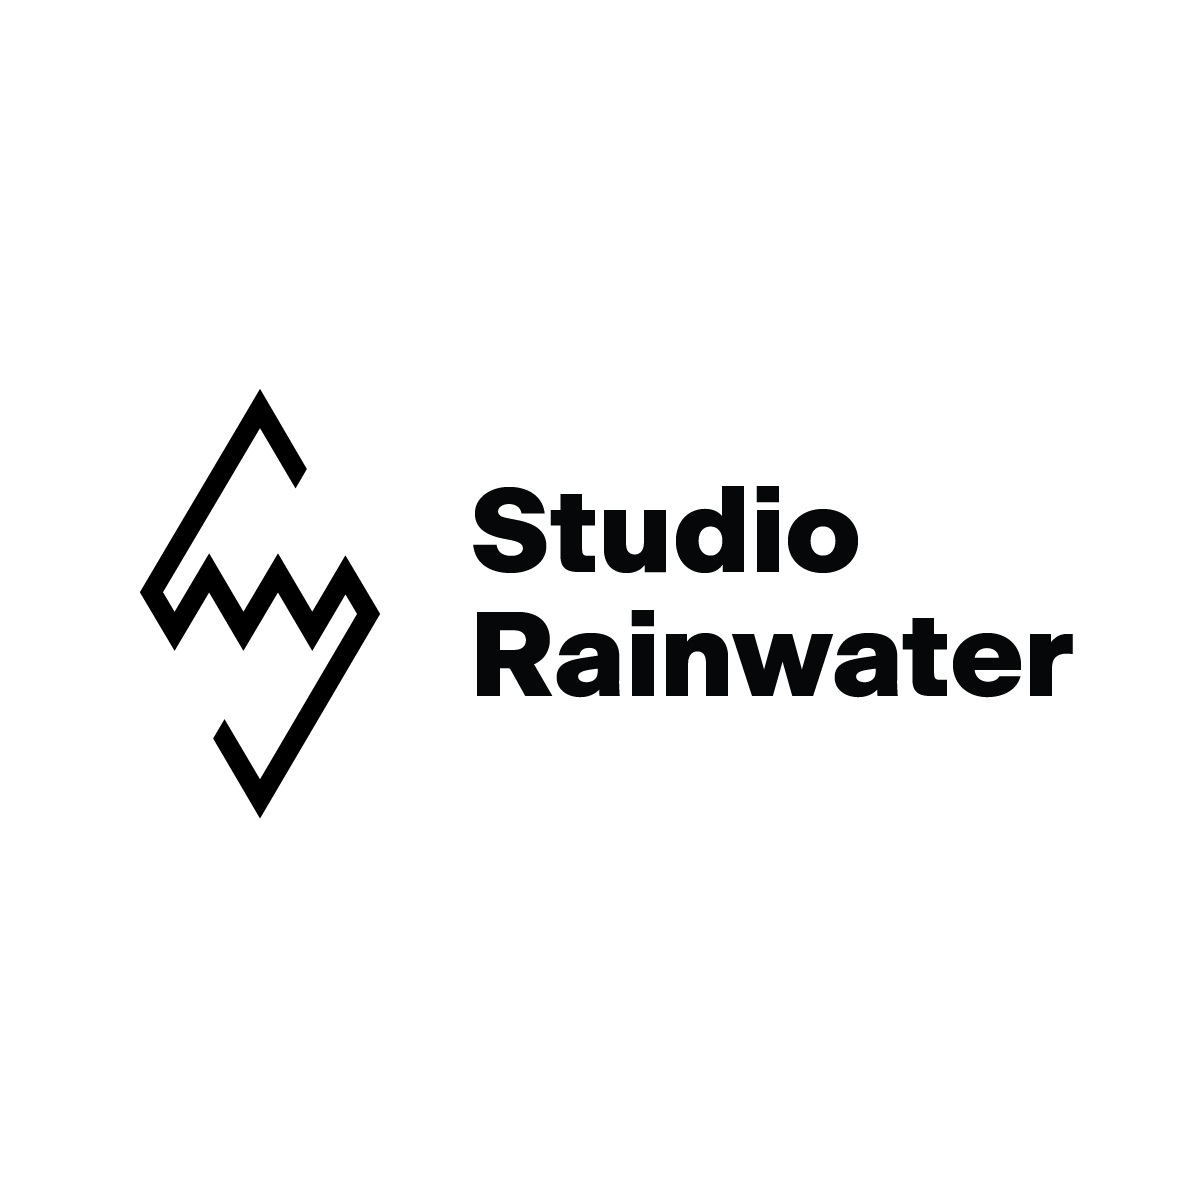 Shop at Studio Rainwater